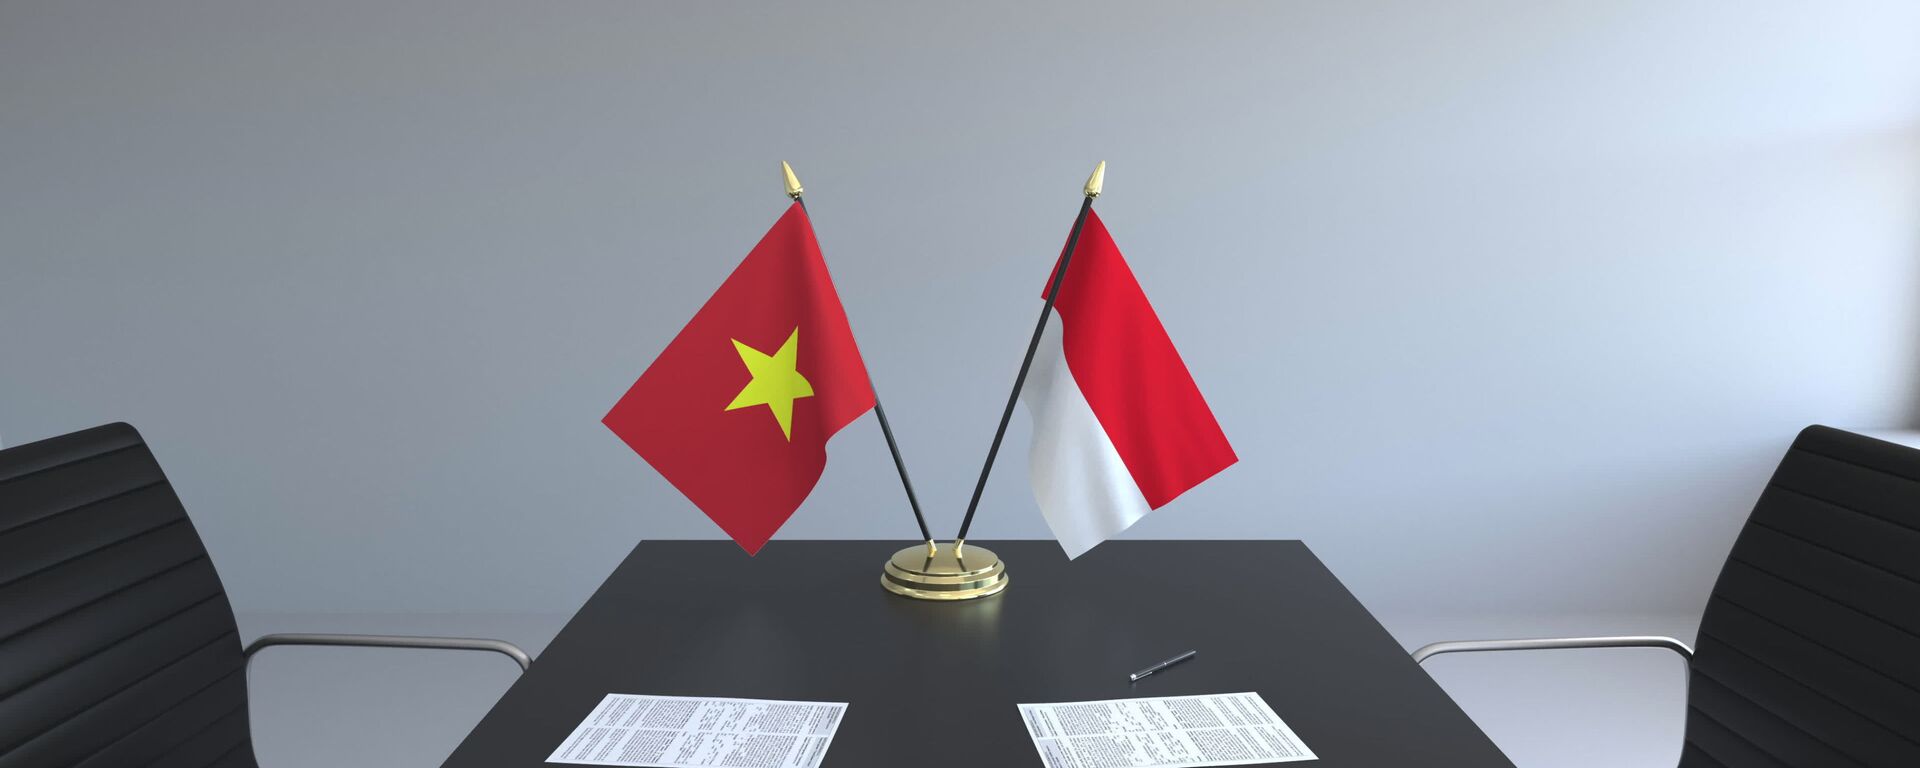 Cờ Việt Nam và cờ Indonesia trên bàn đàm phán - Sputnik Việt Nam, 1920, 22.10.2021